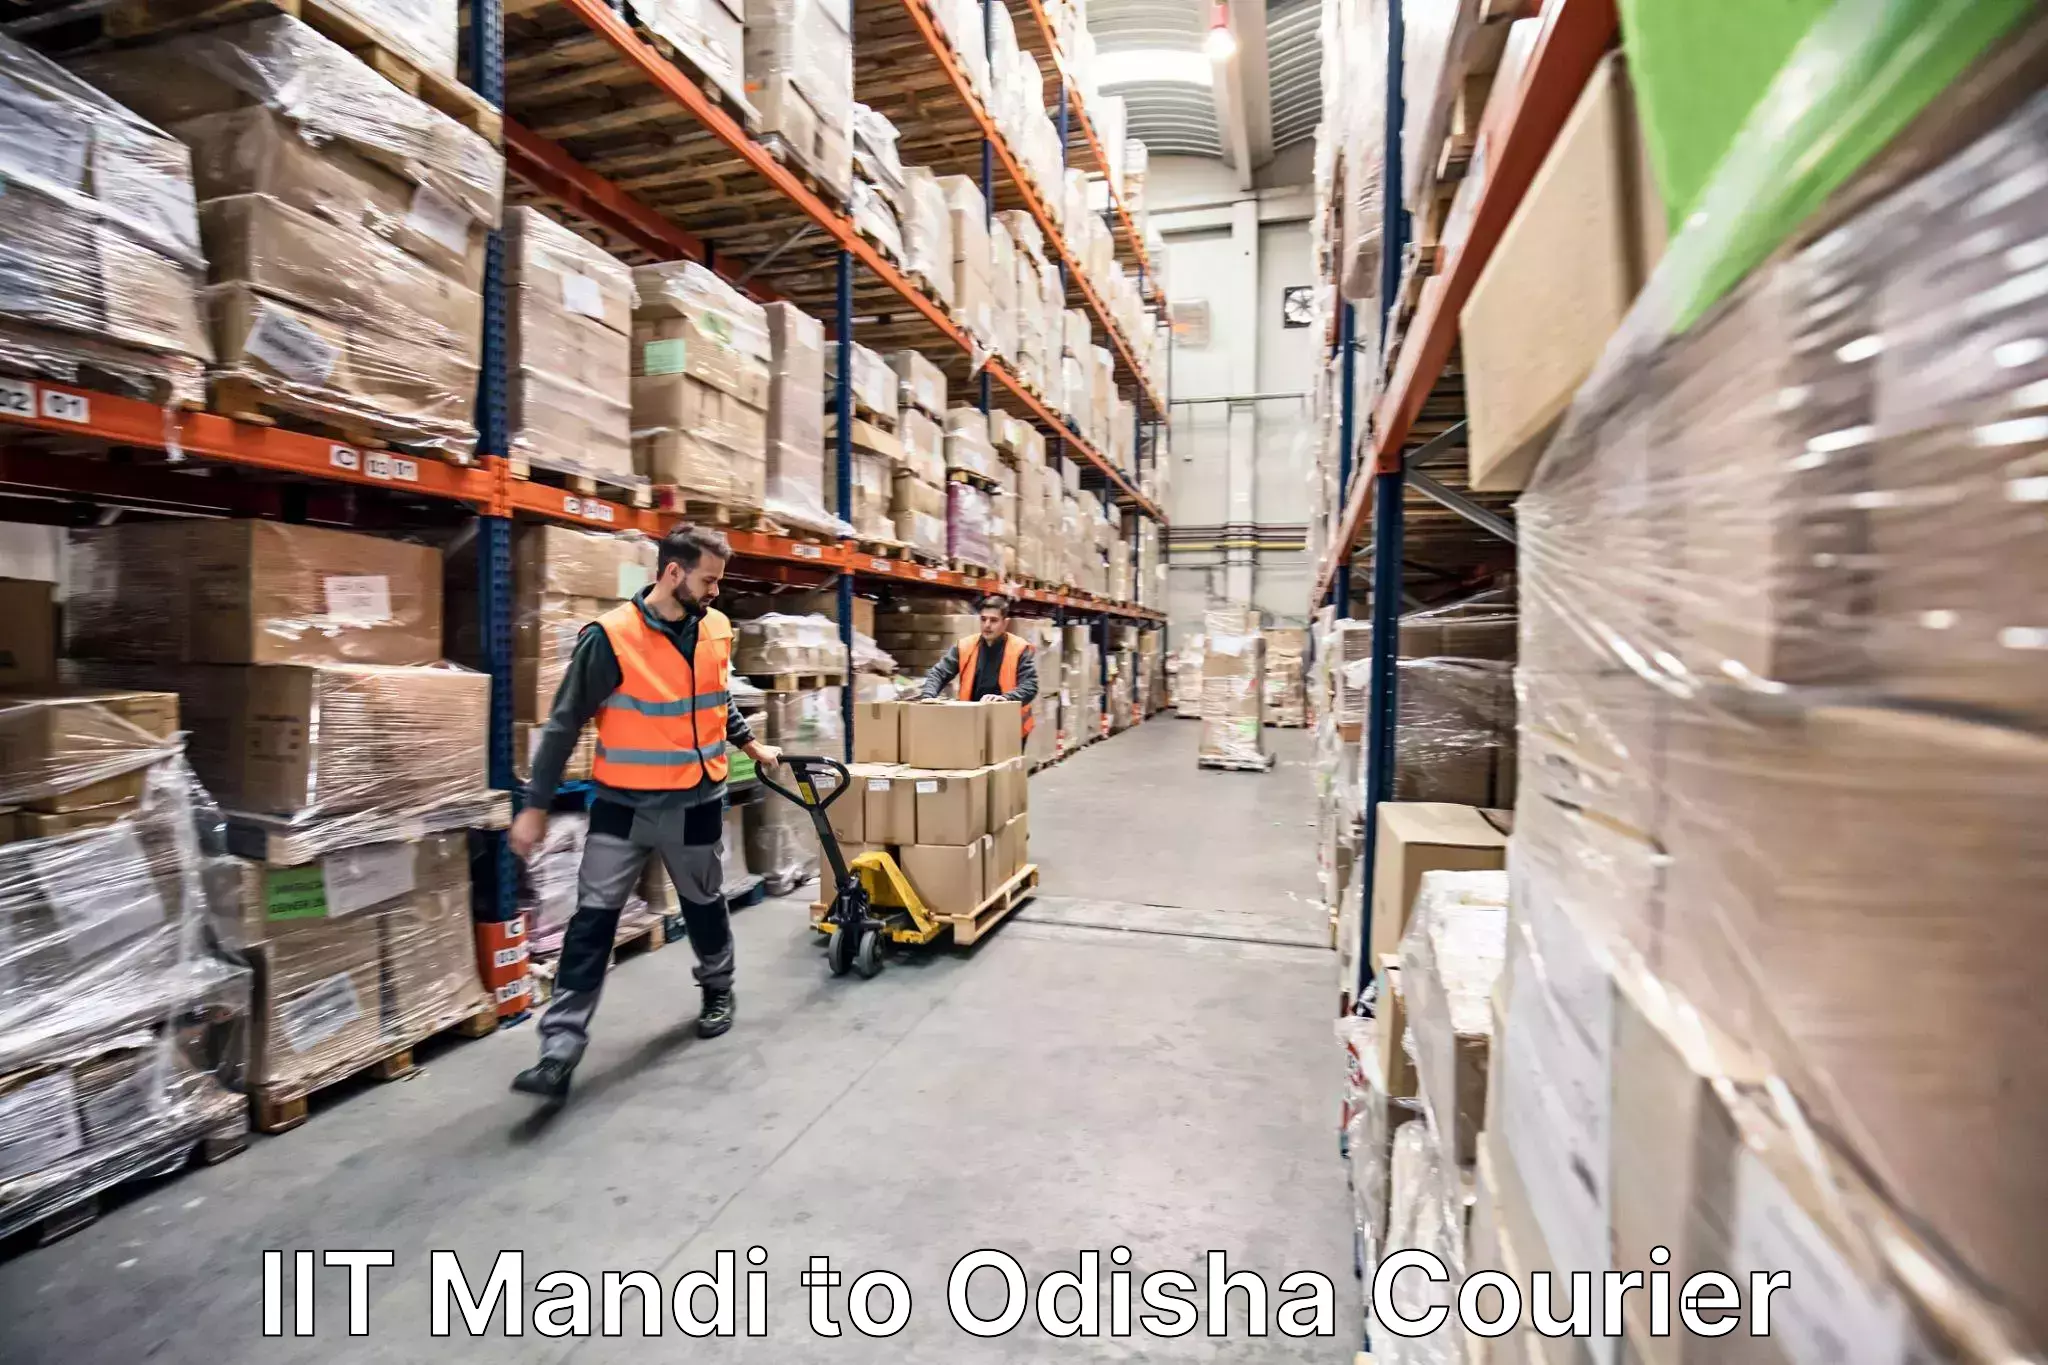 Expert moving and storage IIT Mandi to Baleswar